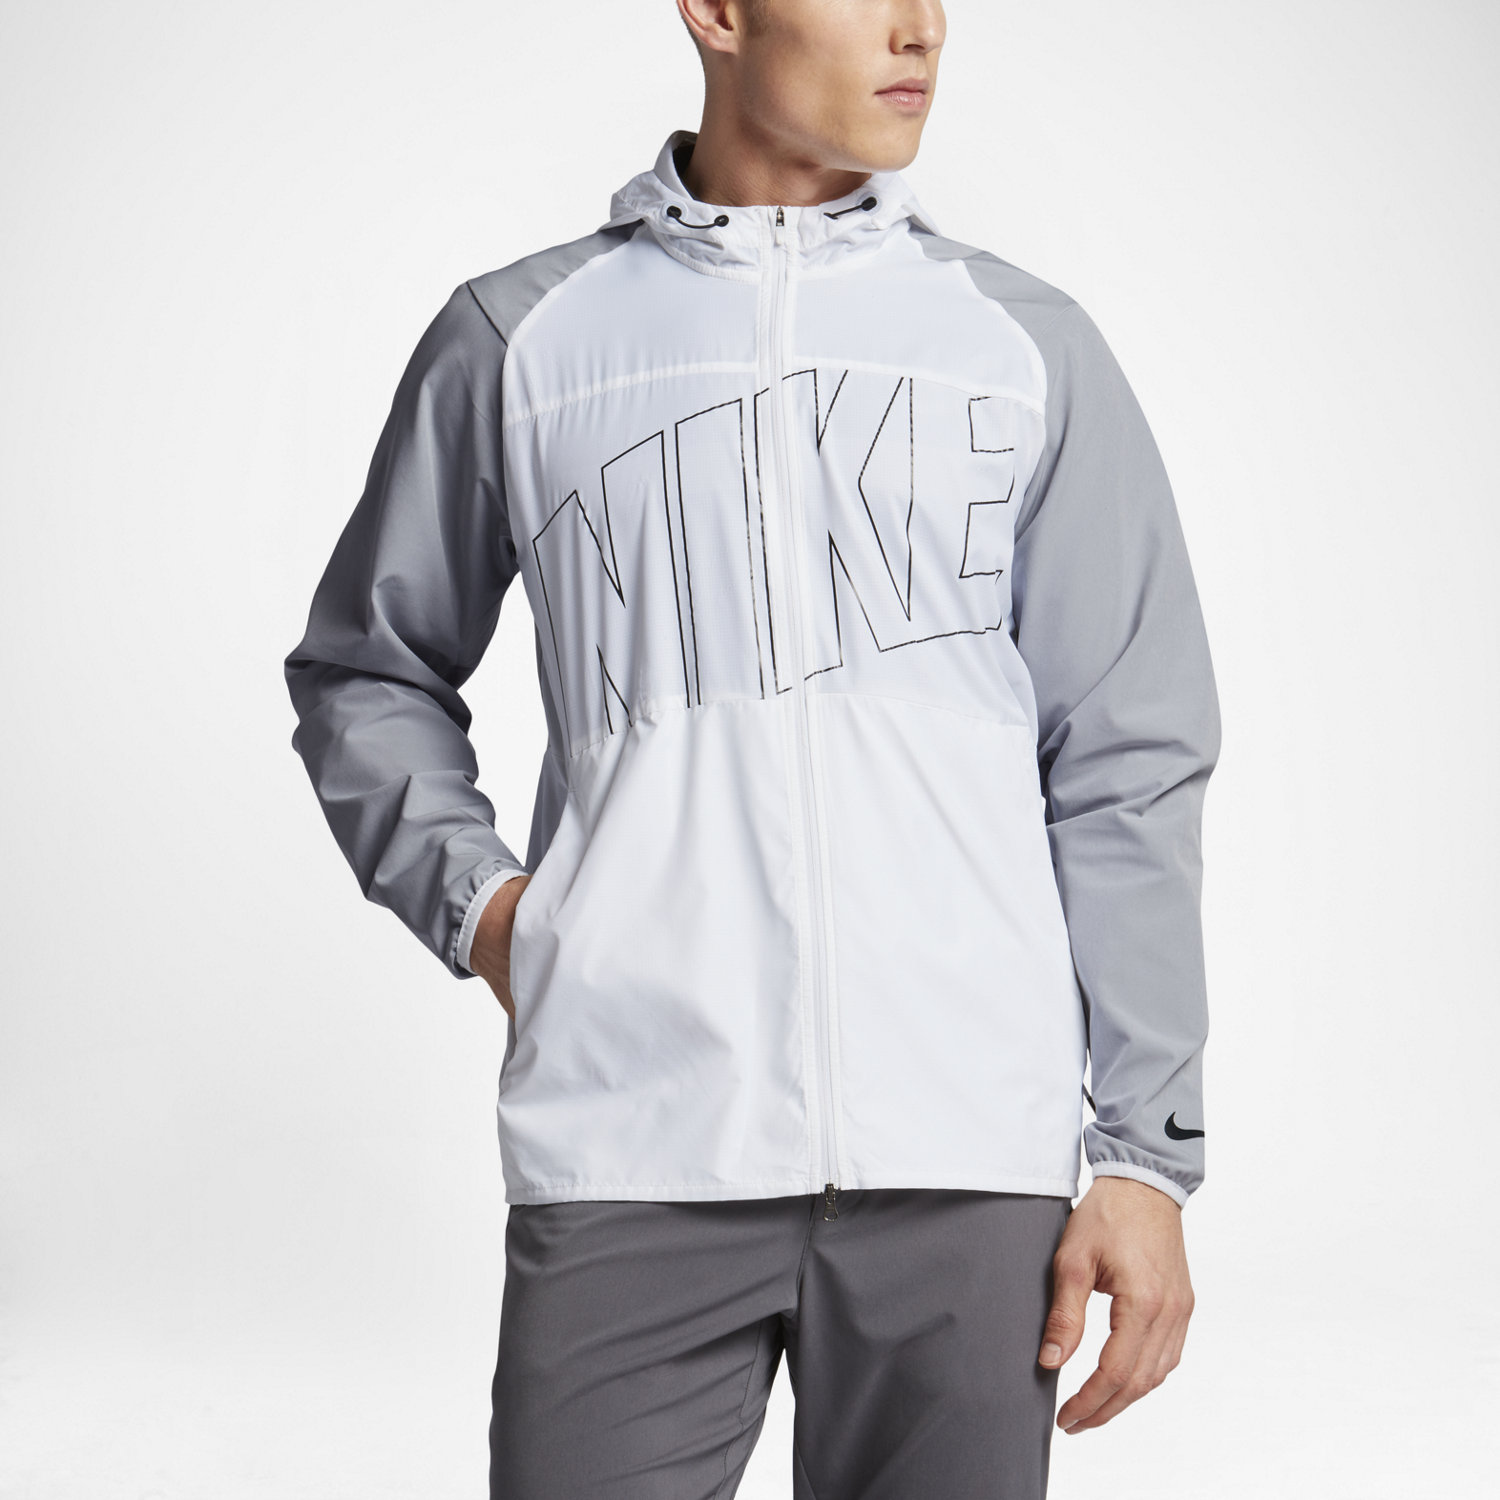 Men's Jackets & Vests. Nike.com